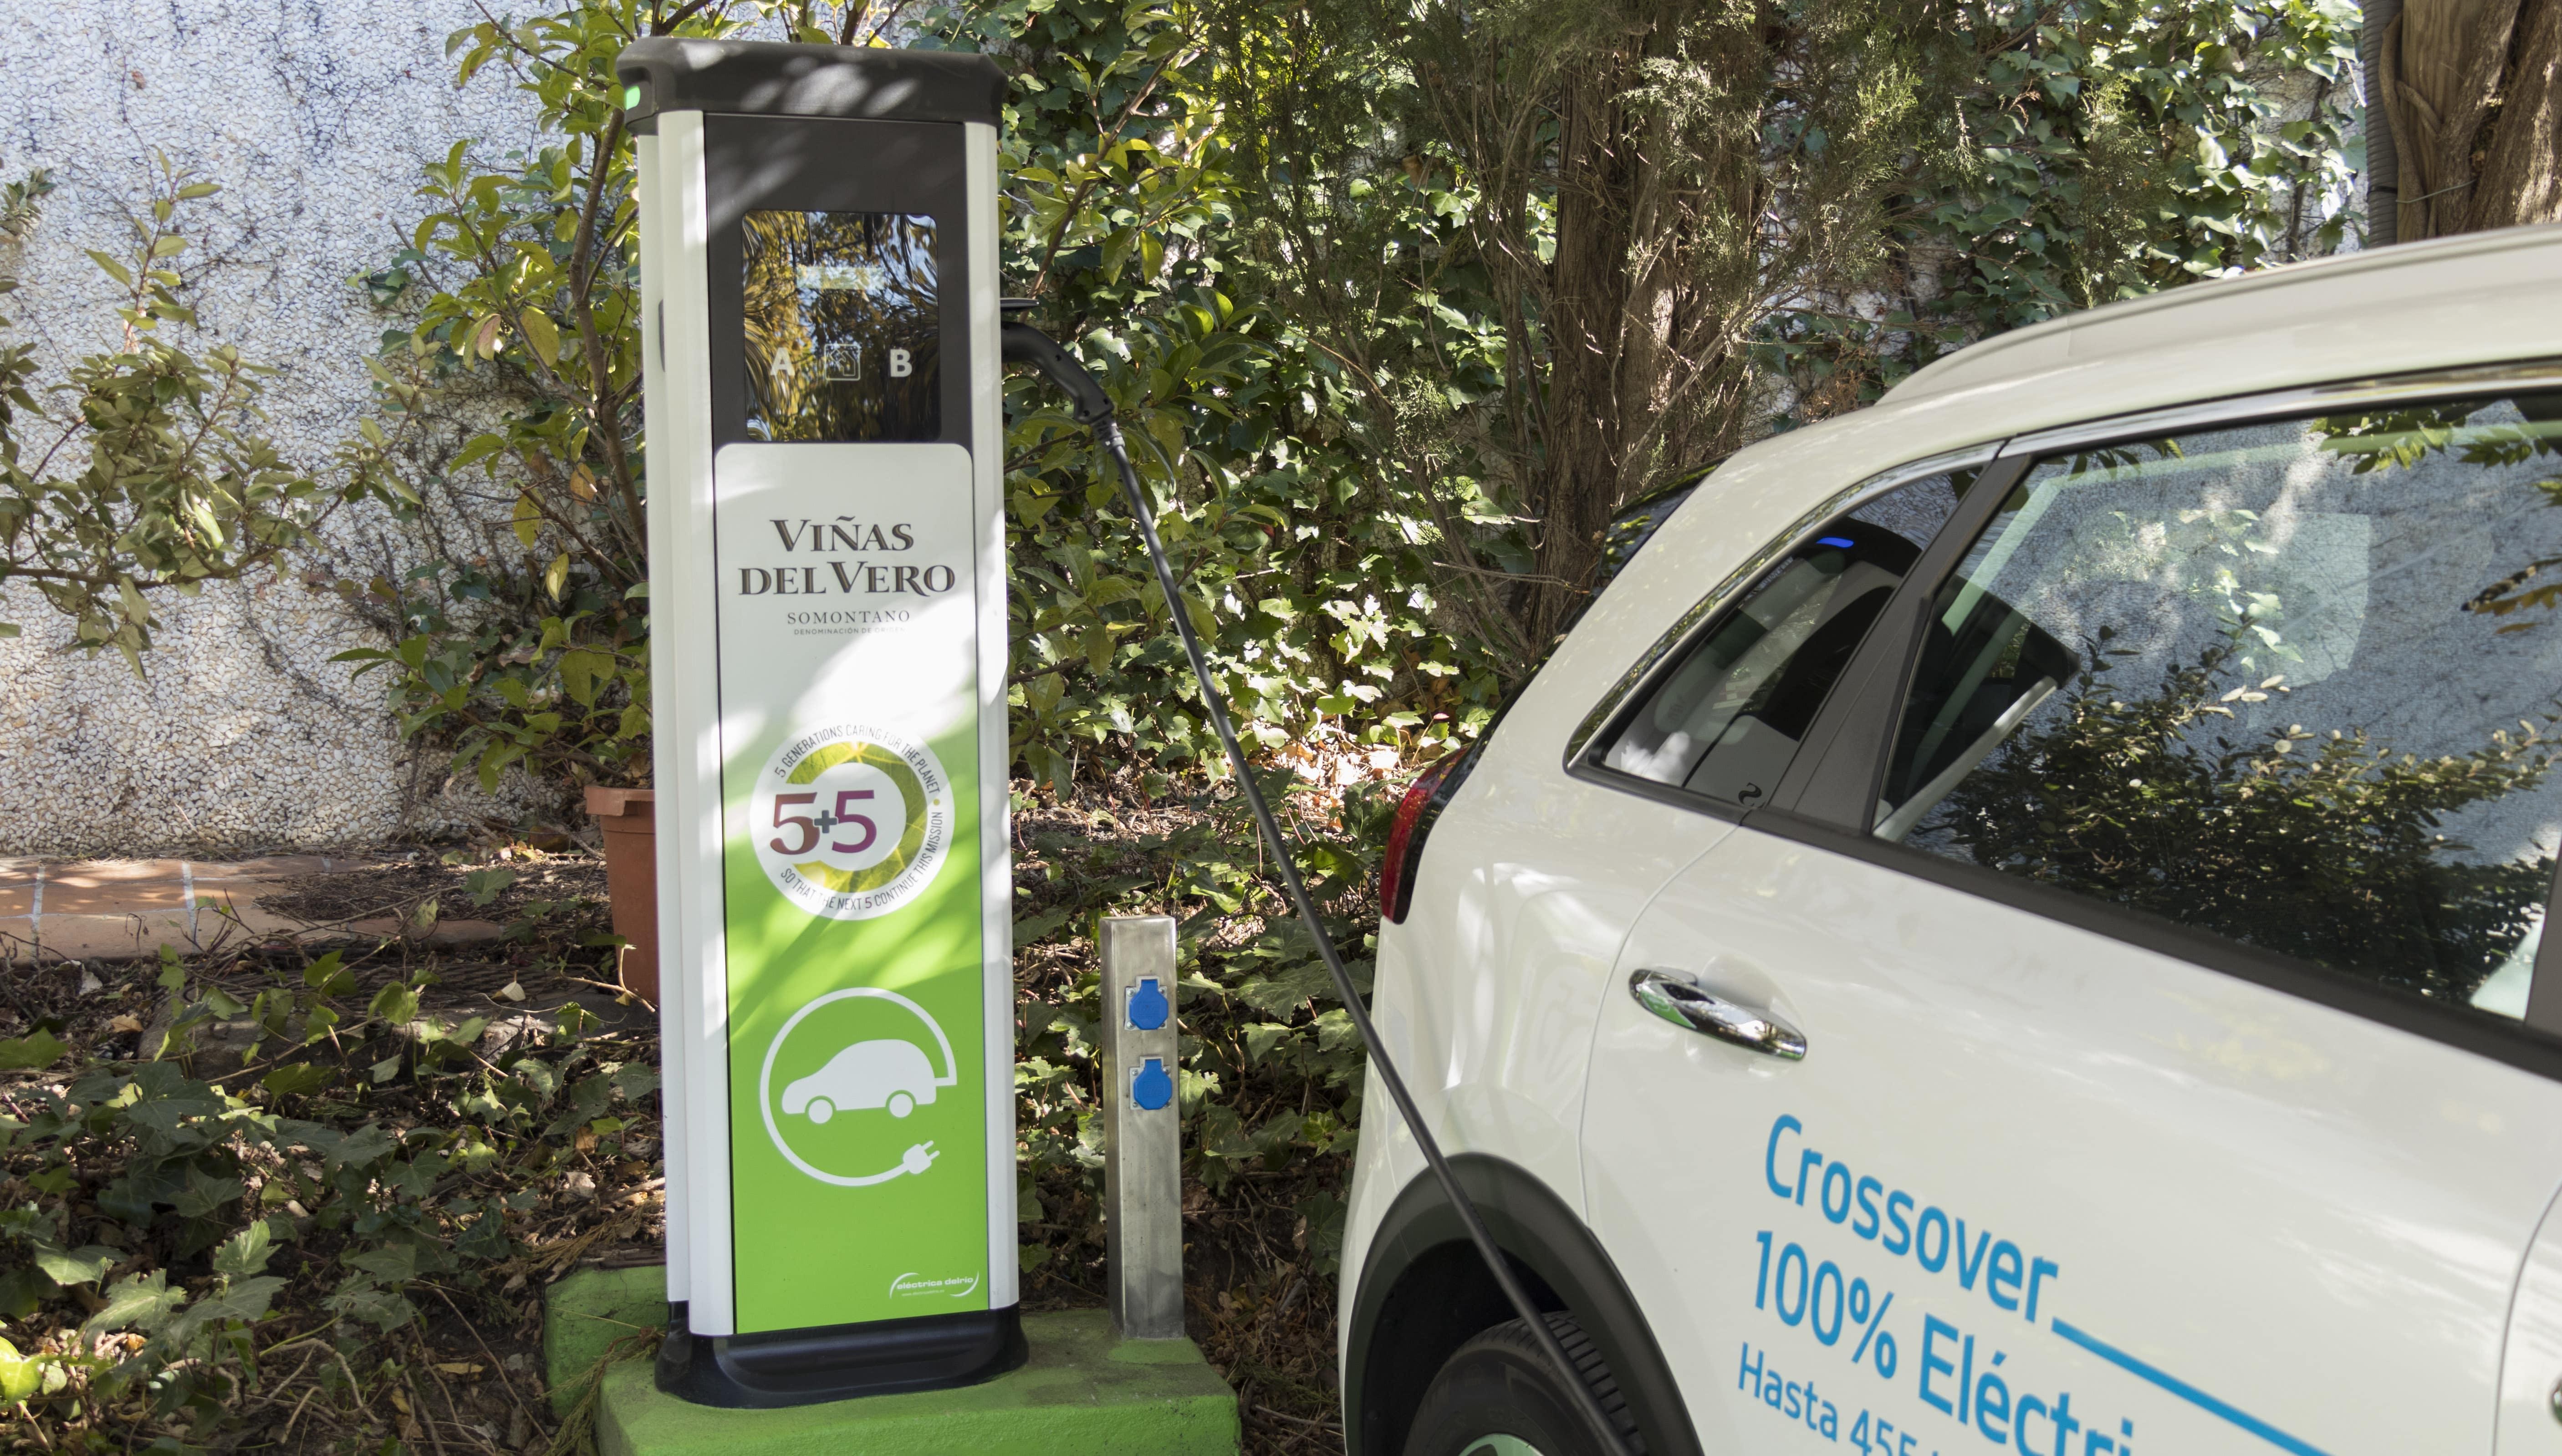 González Byass impulsa la movilidad sostenible colocando postes de recarga gratuitos para coches eléctricos en sus instalaciones